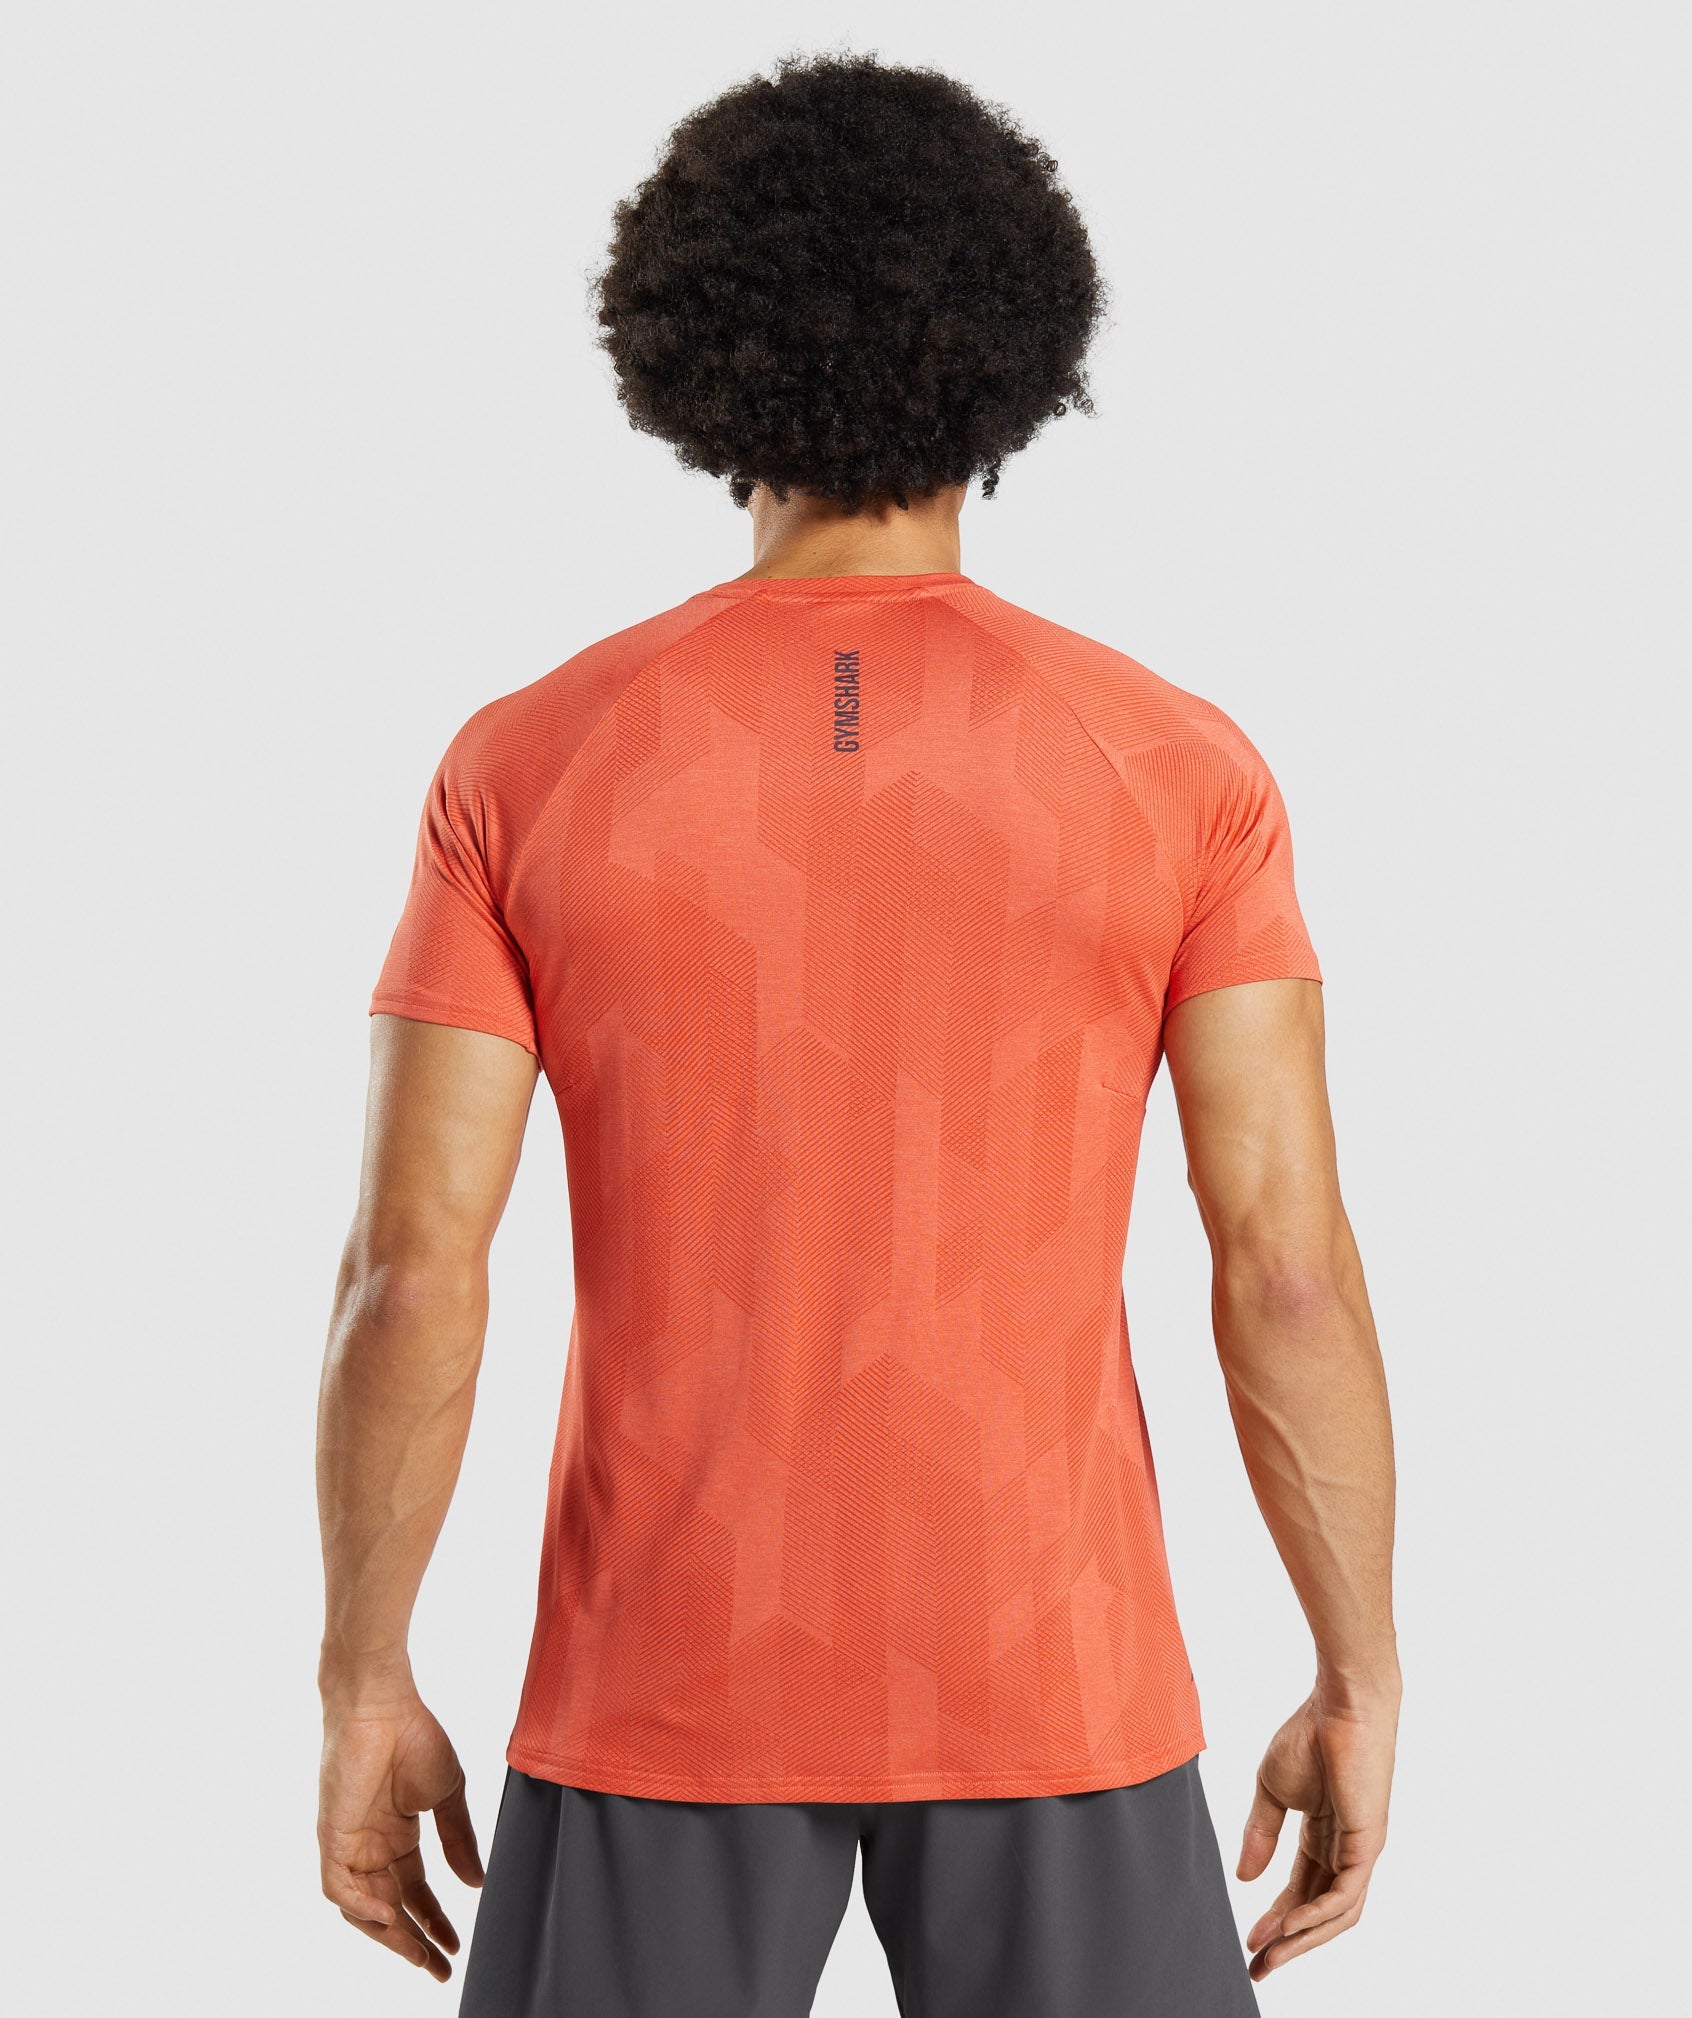 Apex T-Shirt in Spicy Orange/Papaya Orange - view 2